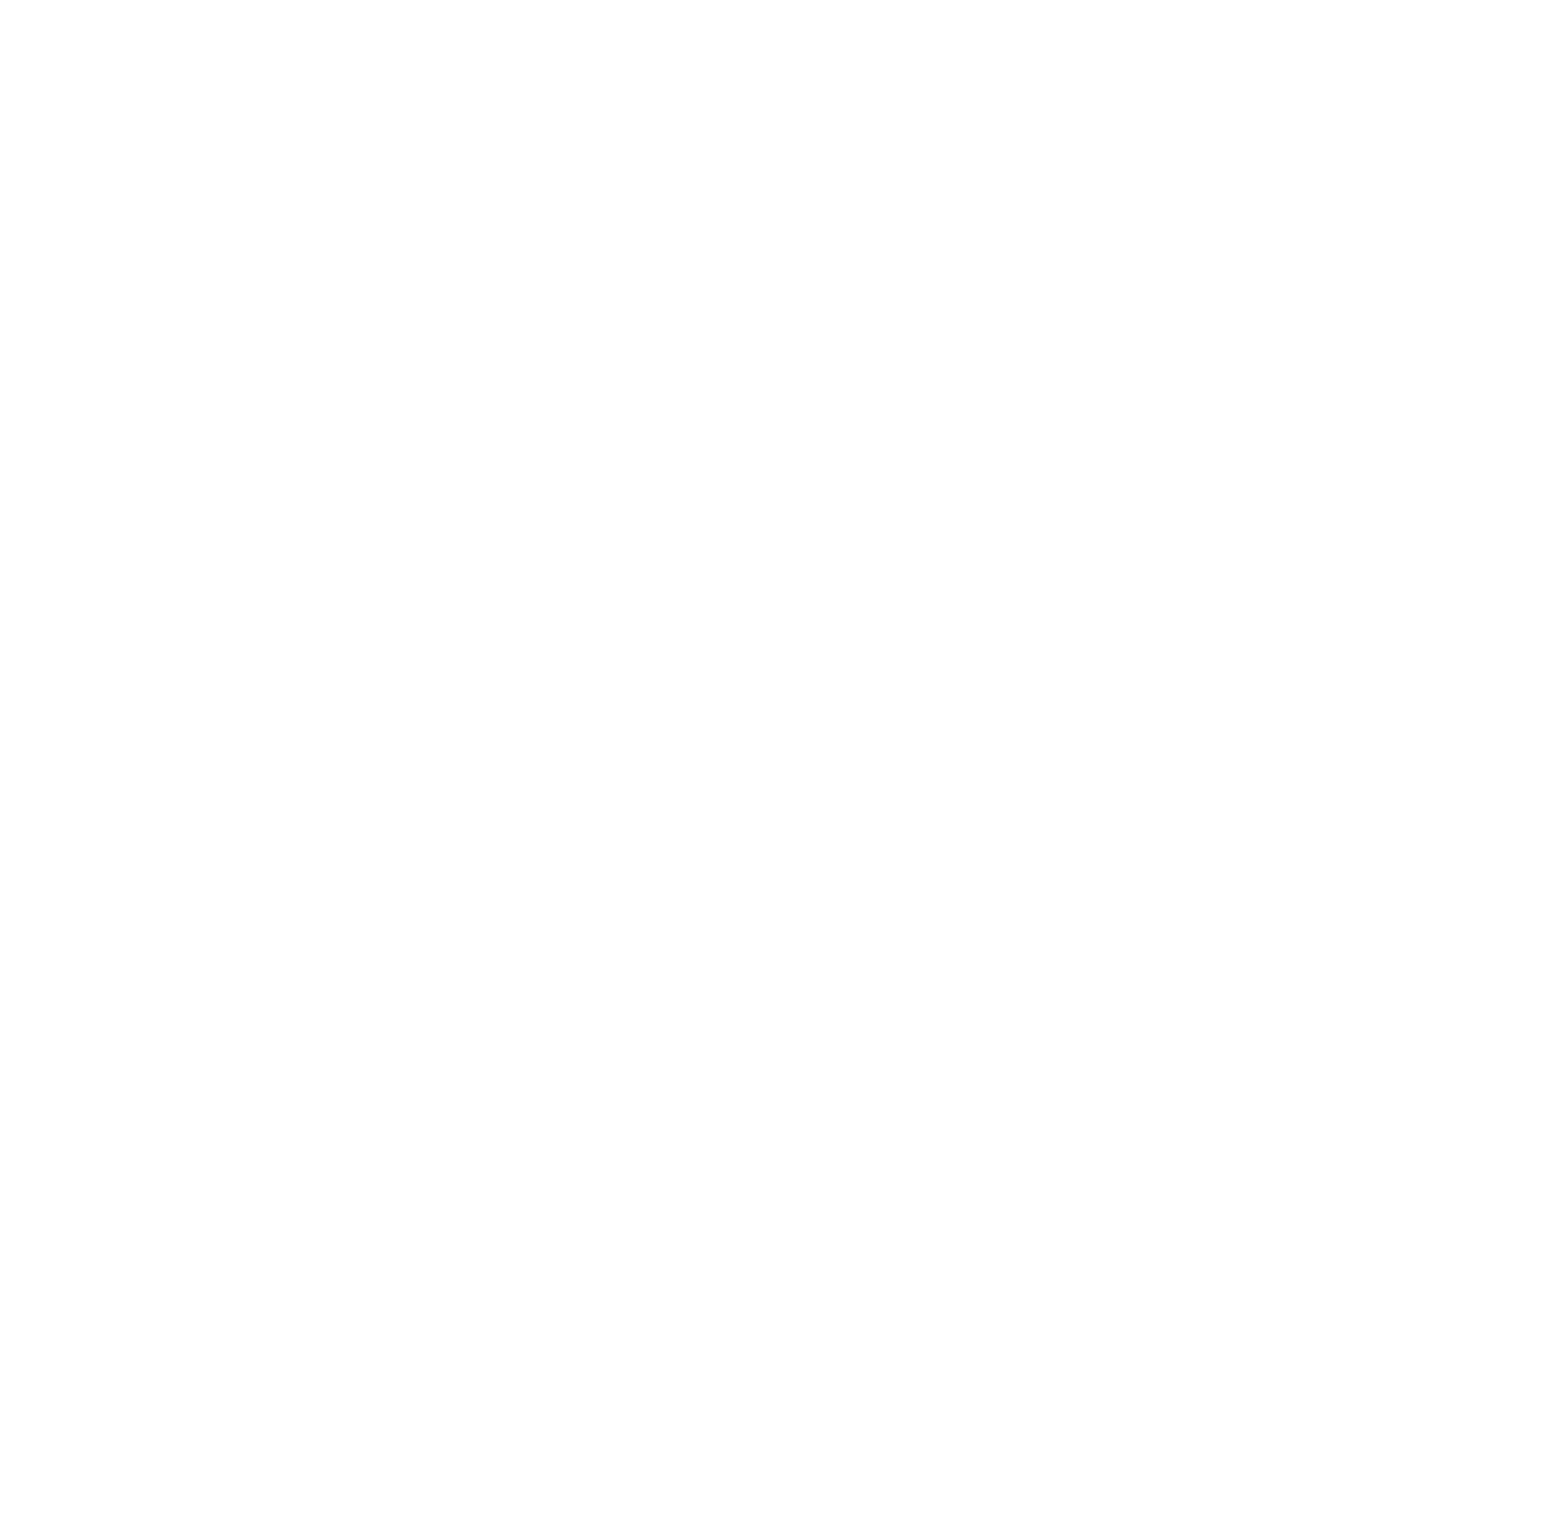 Tabcorp logo pour fonds sombres (PNG transparent)